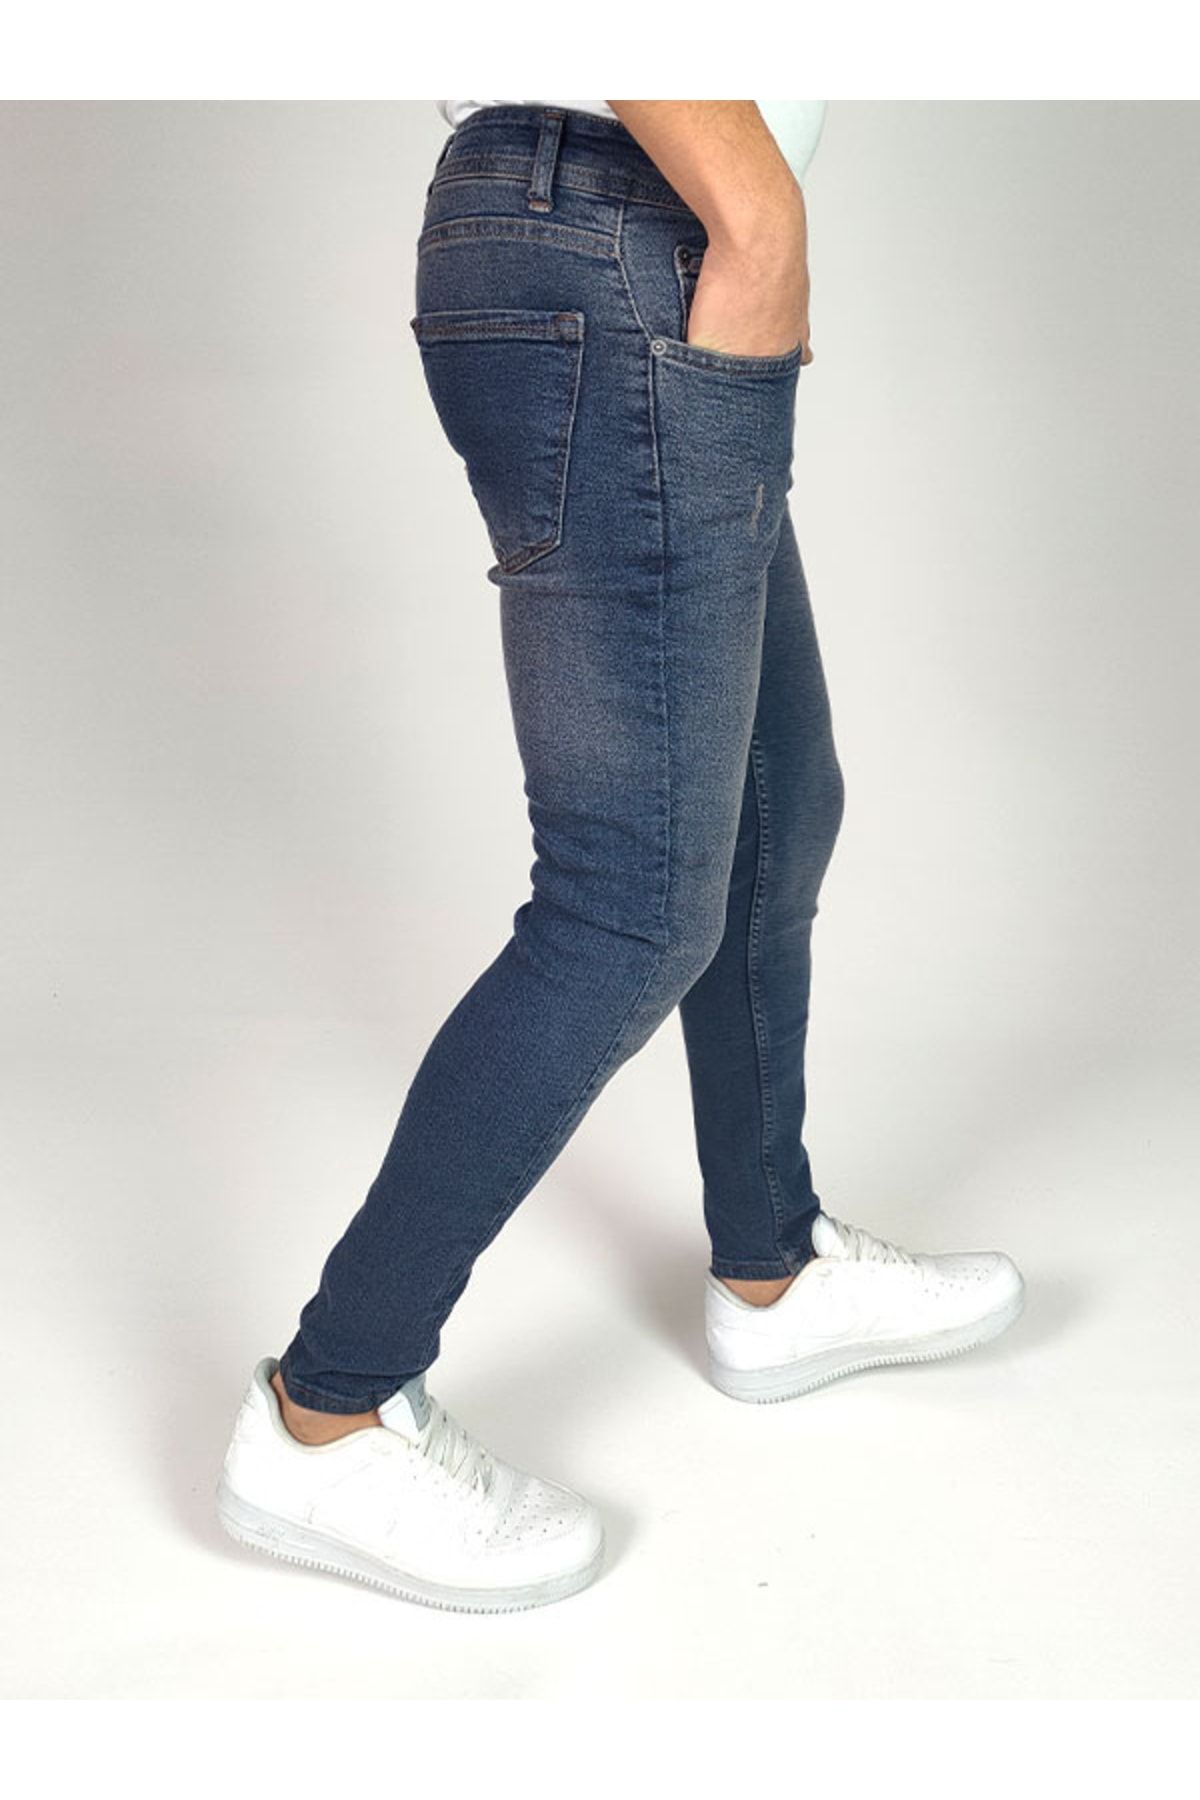 Jeanblack Men's Jeans Skinny Fit Lycra Brown Tint Blue Nails Enj 